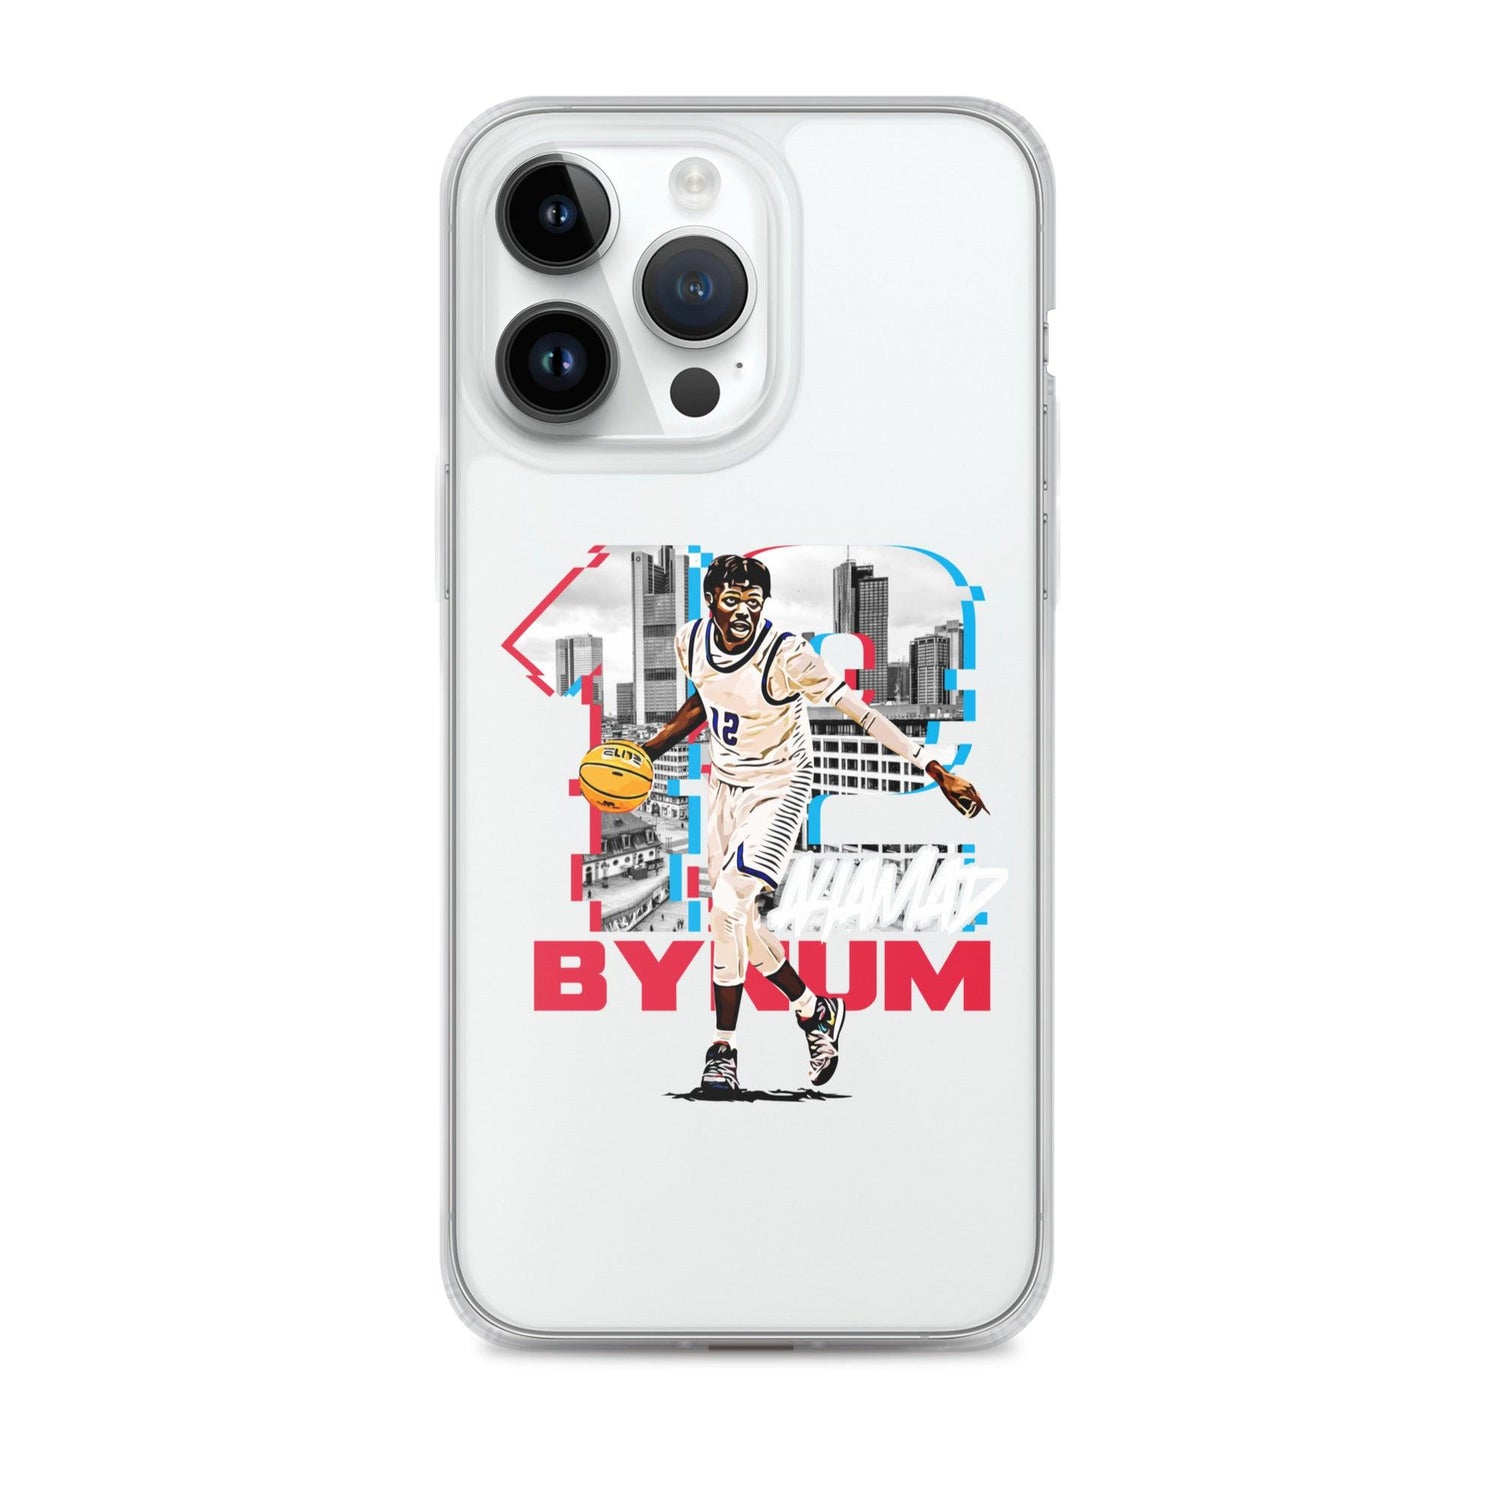 Ahamad Bynum "Gameday" iPhone® - Fan Arch